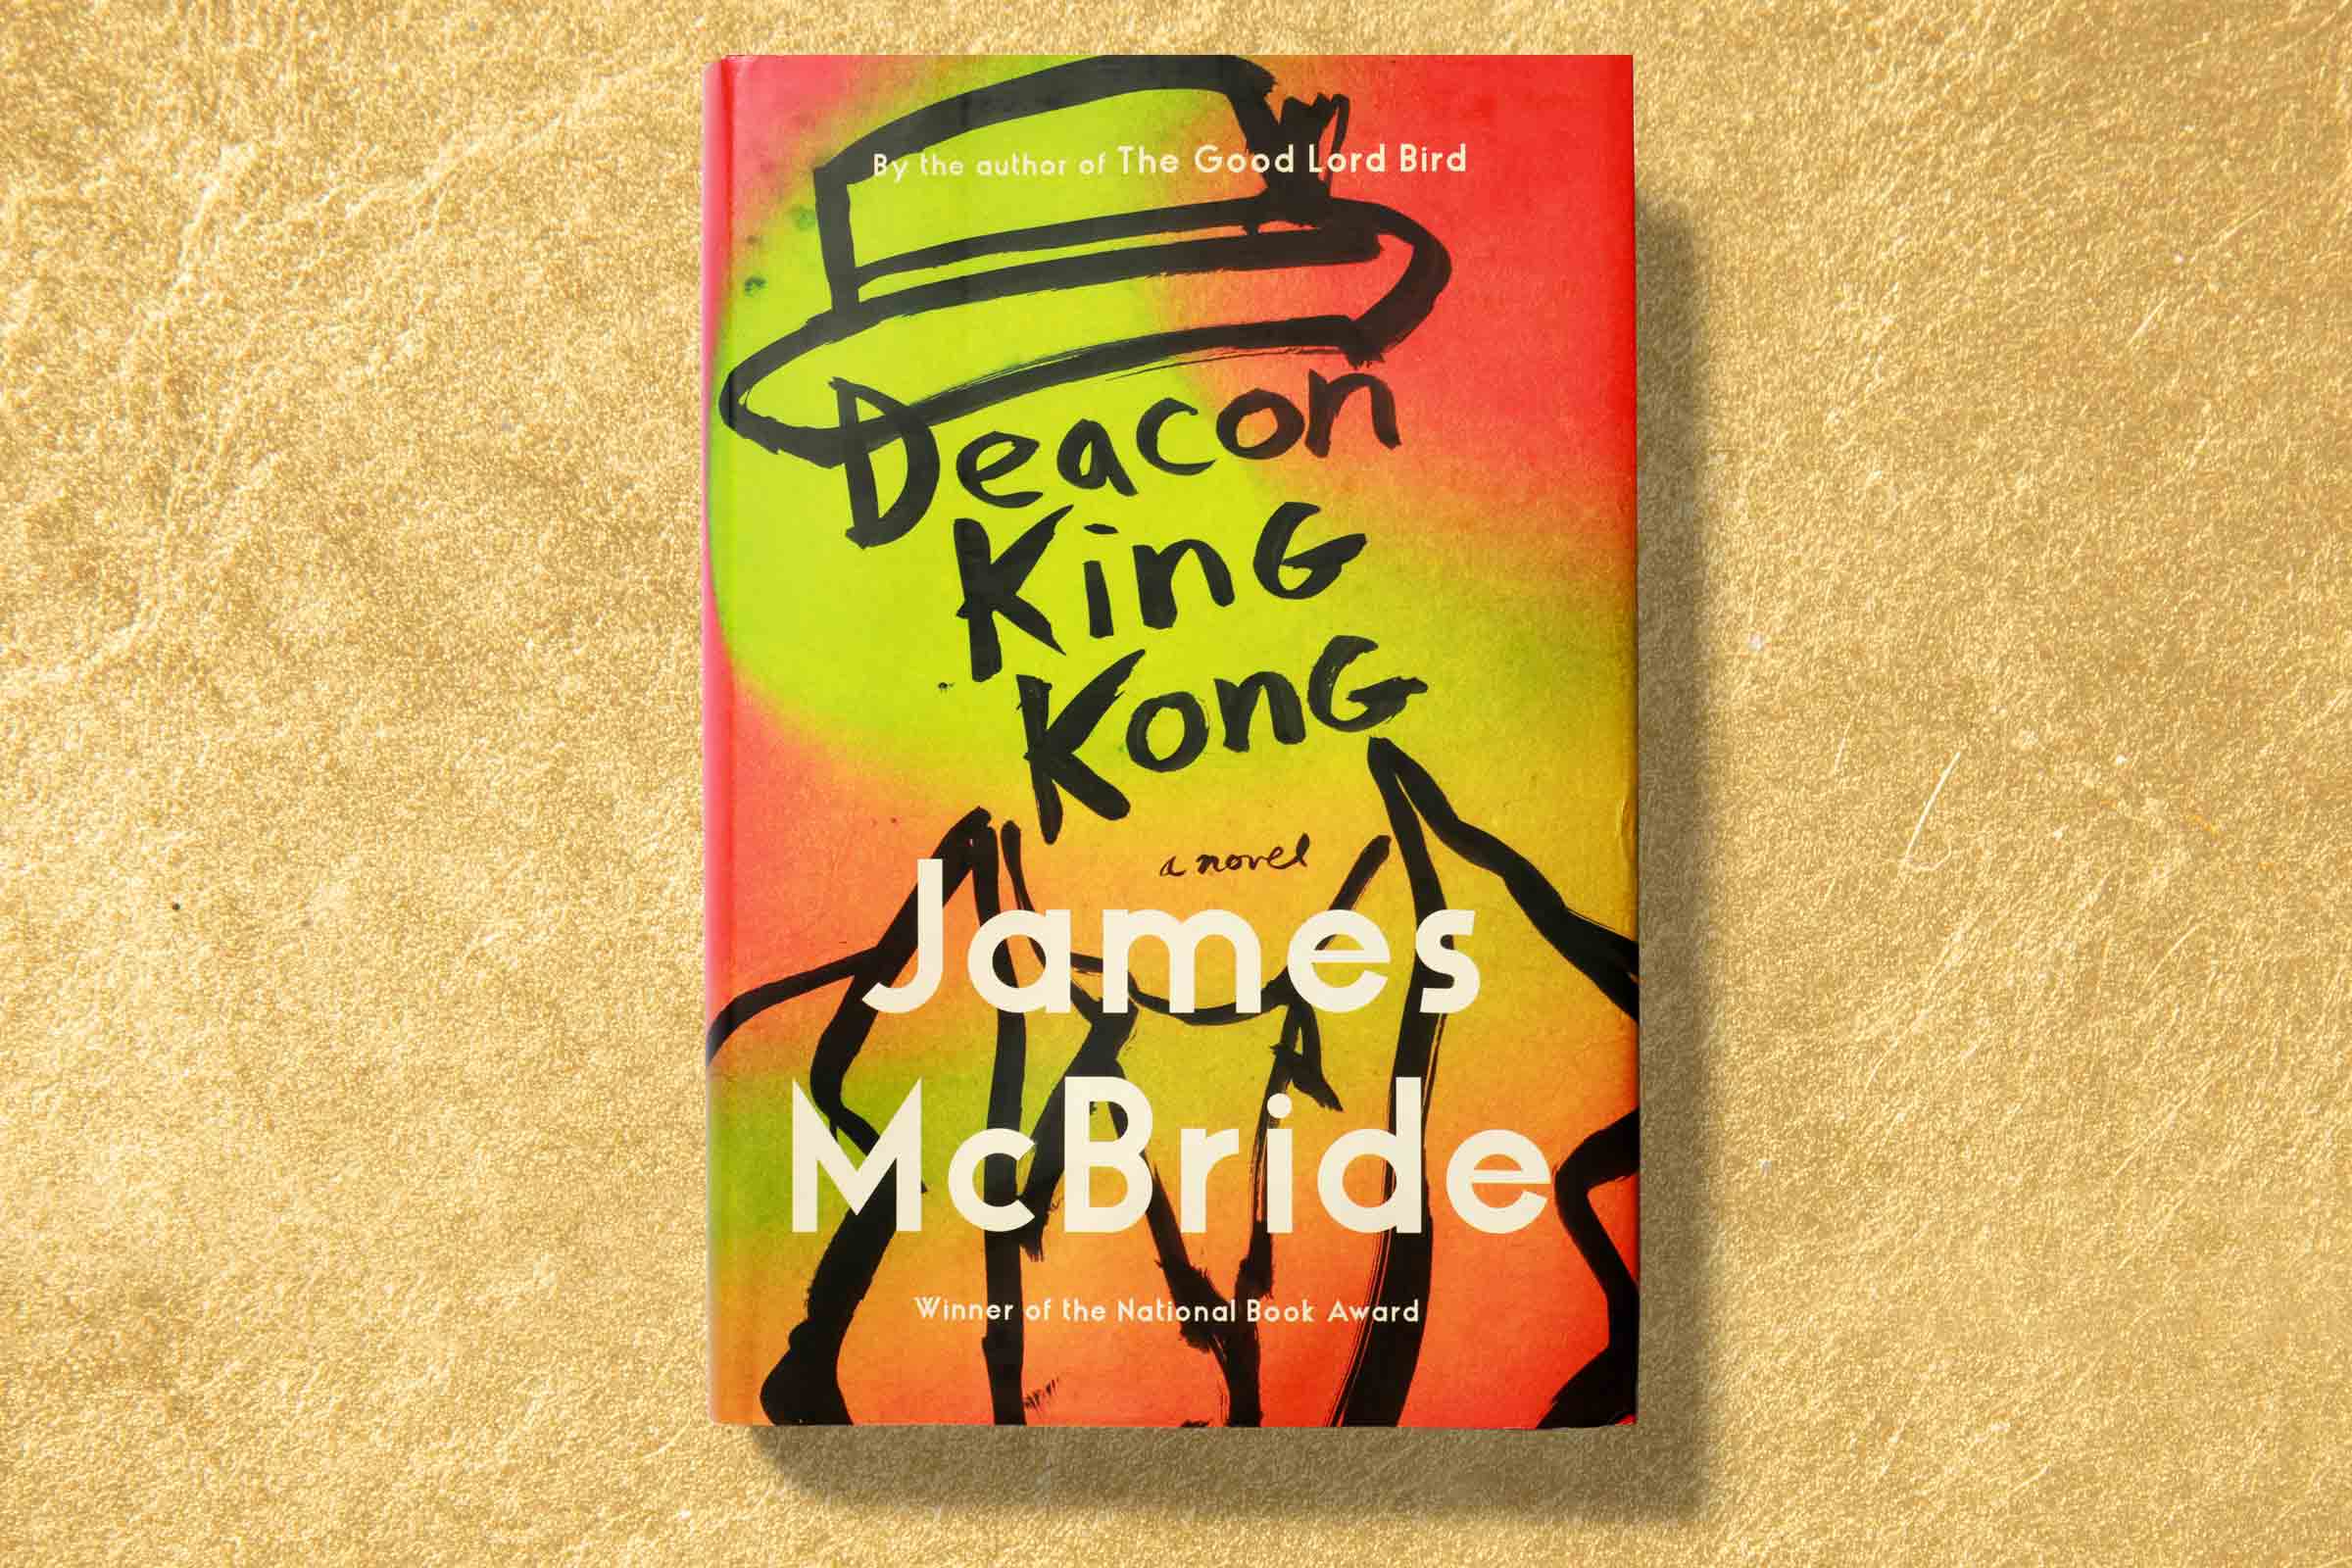 James-McBride-Deacon-King-Kong-review